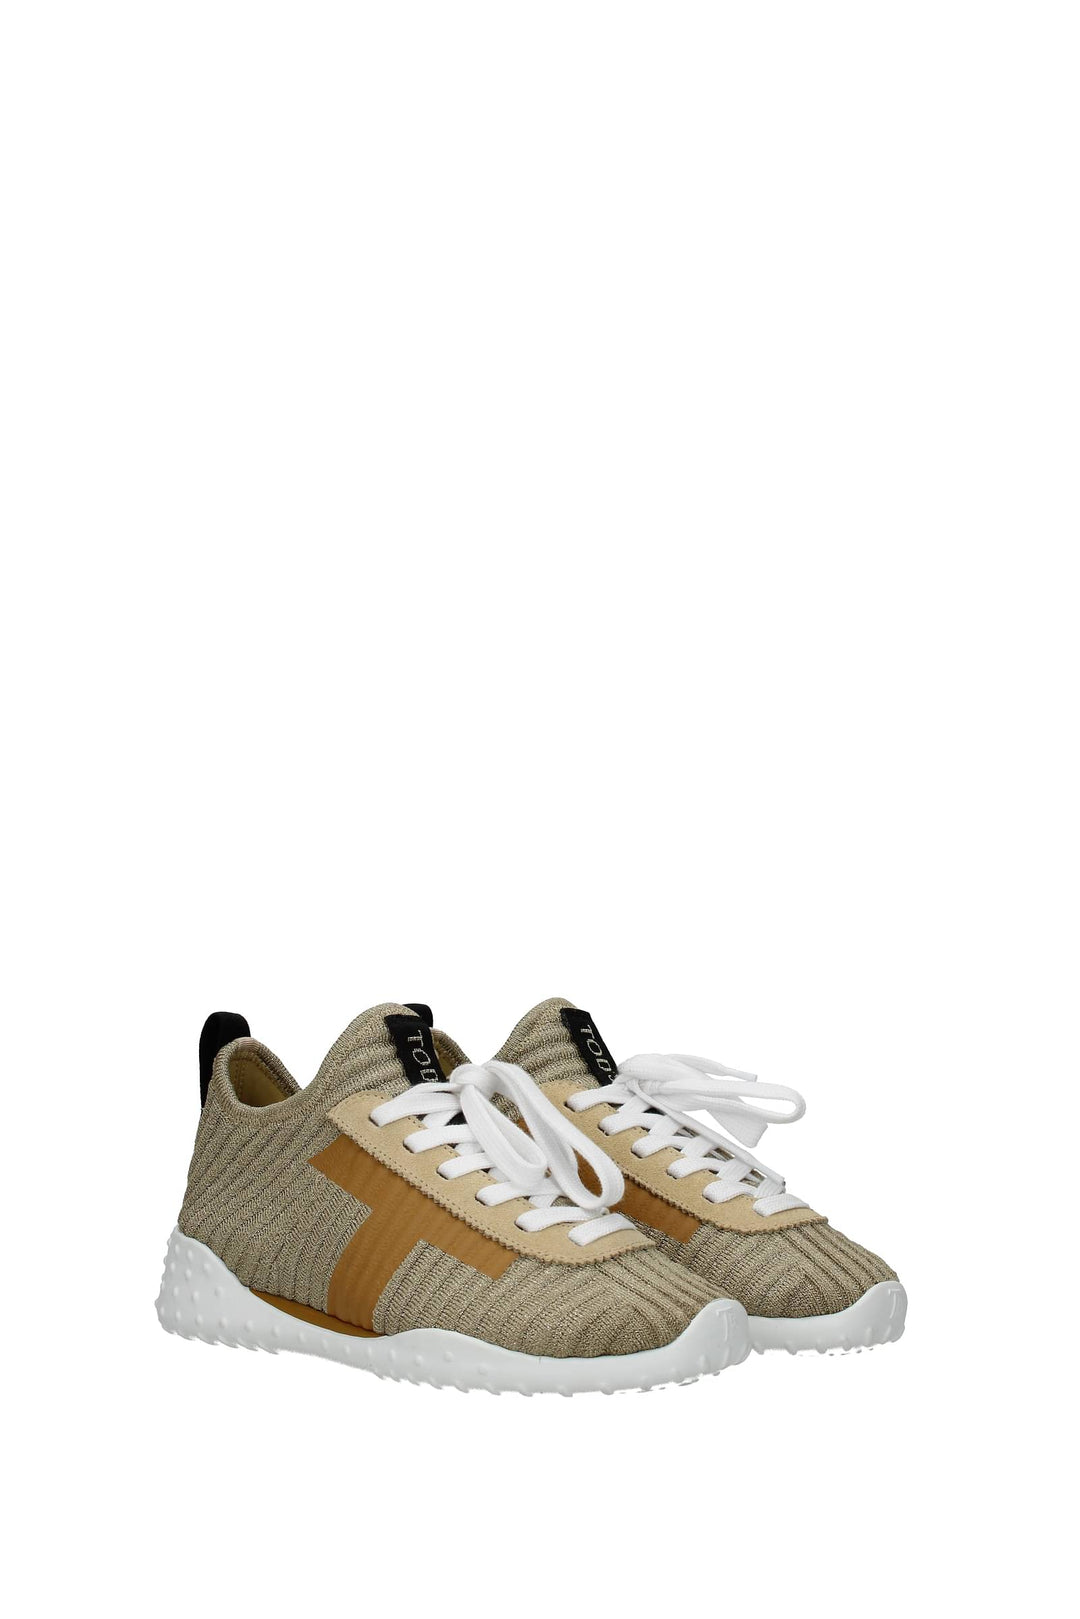 Sneakers Tessuto Oro - Tod's - Donna